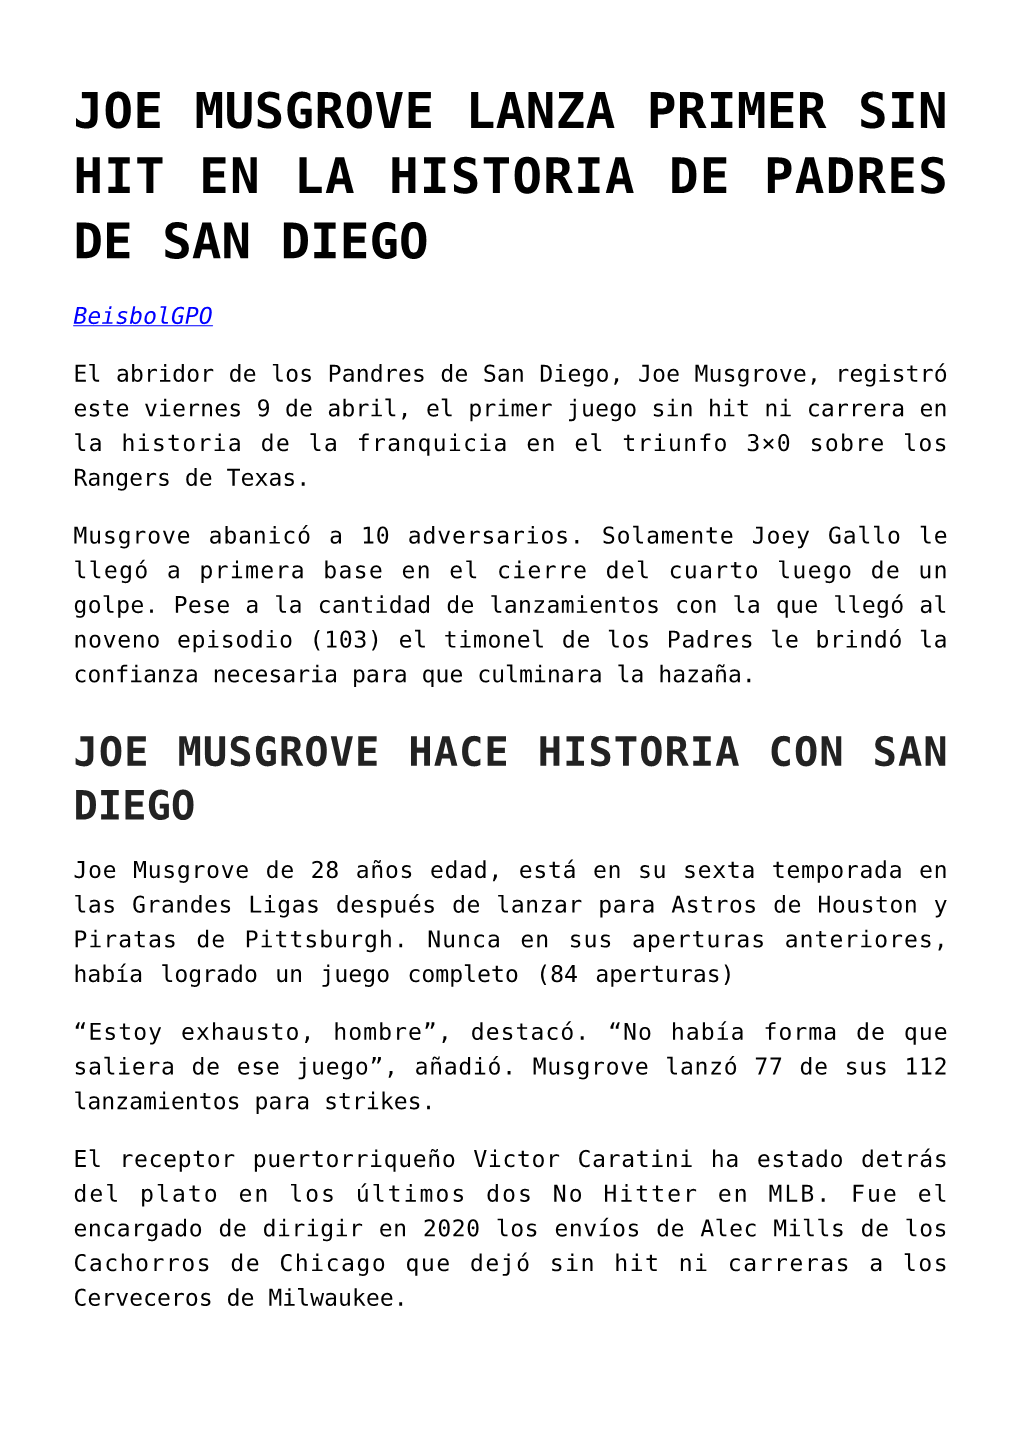 Joe Musgrove Lanza Primer Sin Hit En La Historia De Padres De San Diego